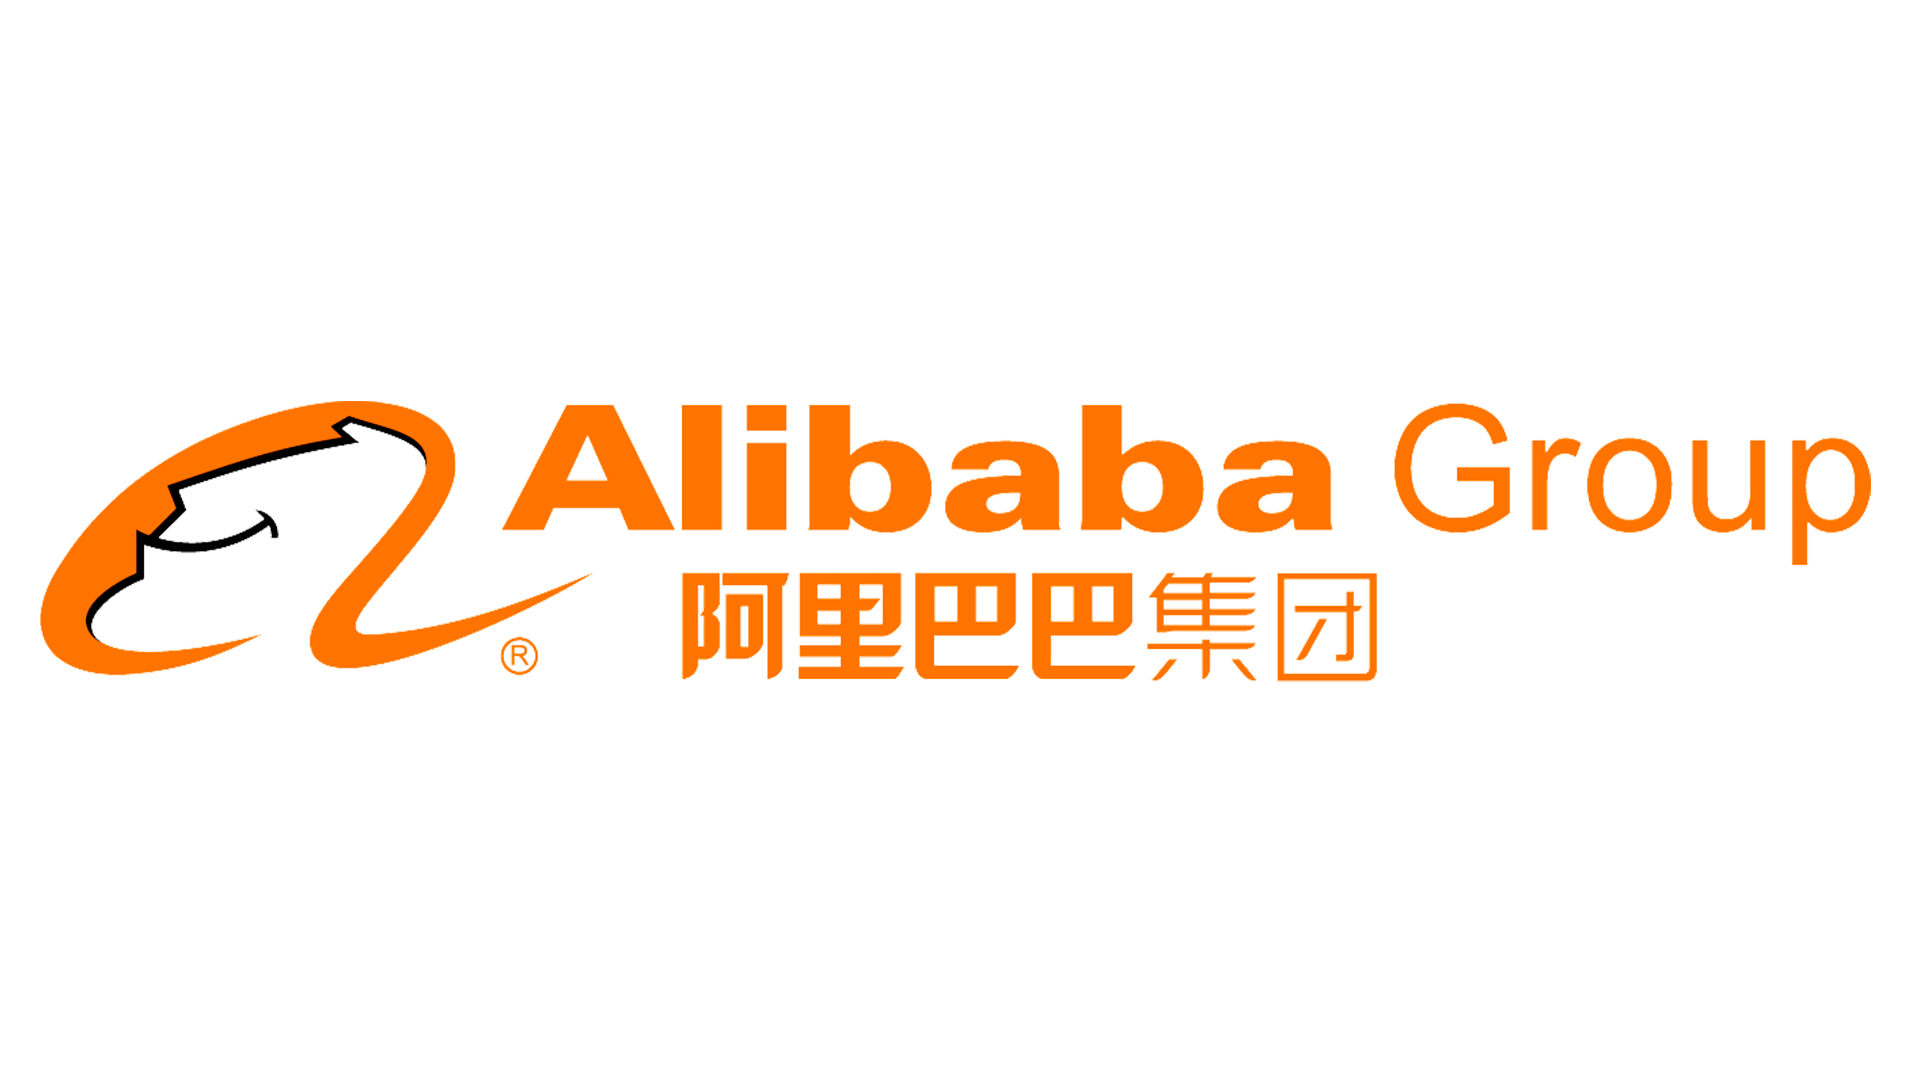 Алибаба групп Alibaba Group 阿里巴巴集团